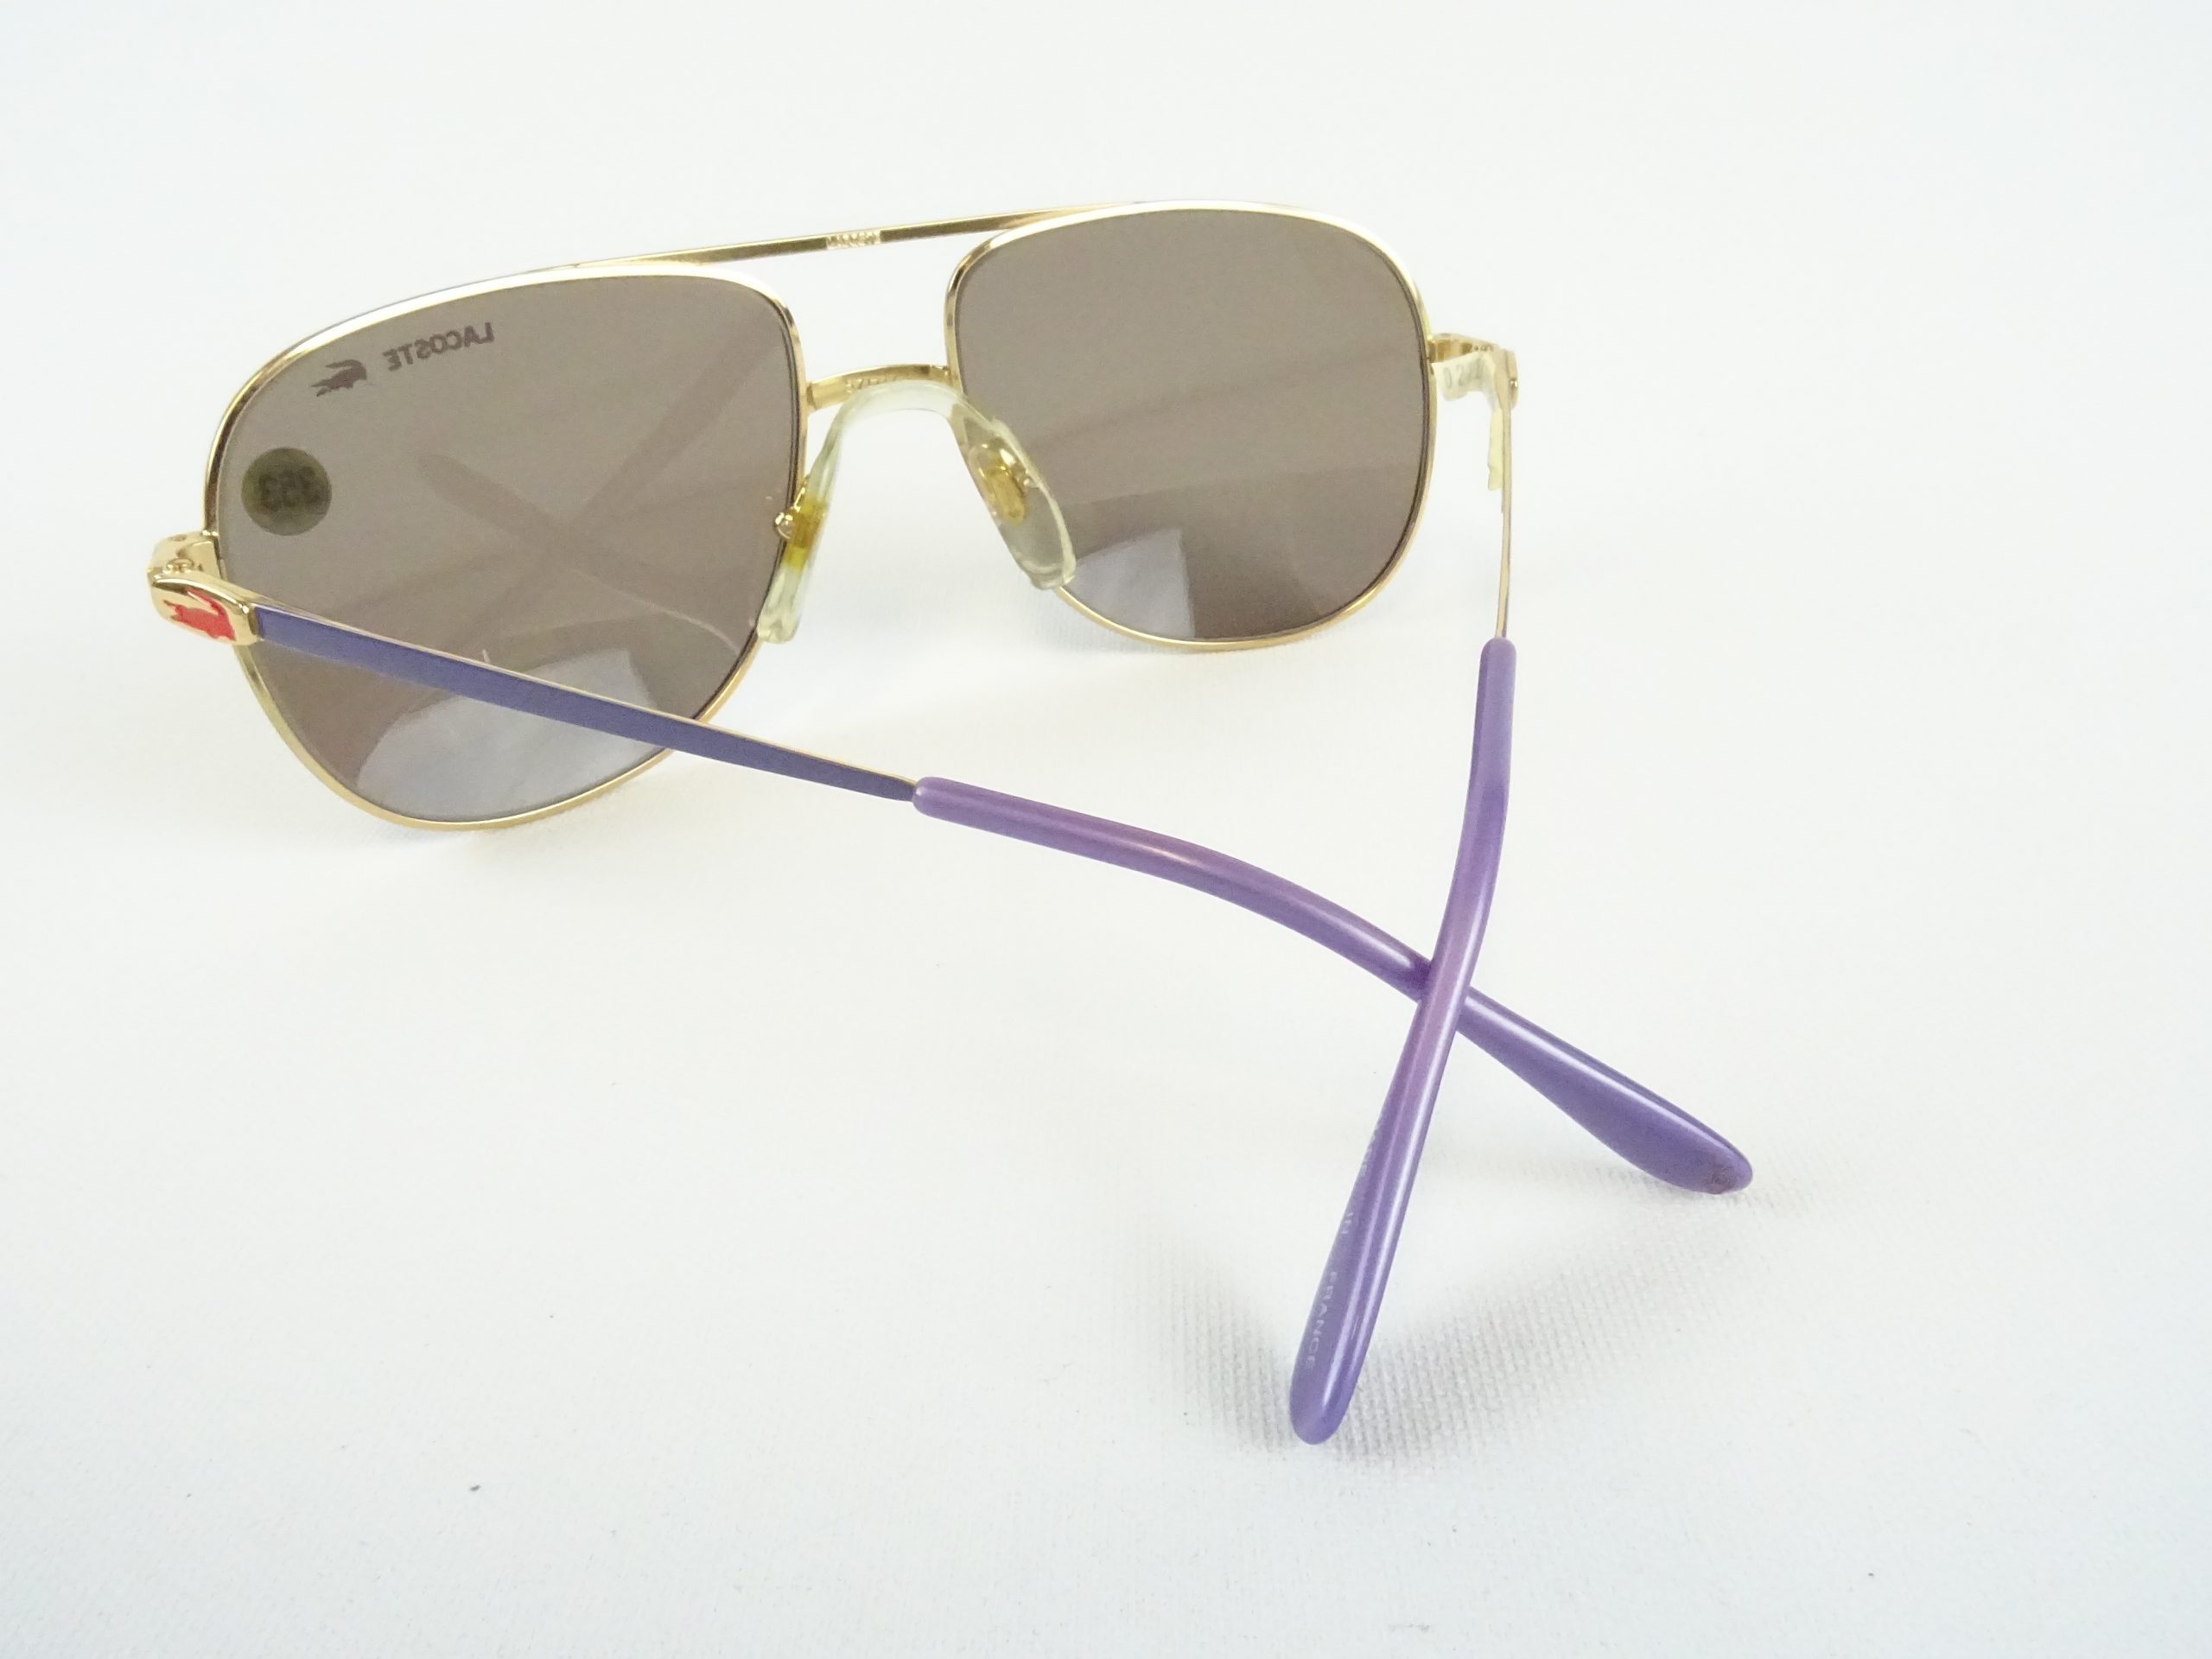 Sonnenbrille Pilotenbrille 400 UV Metallgestell golden verspiegelt lila getönt